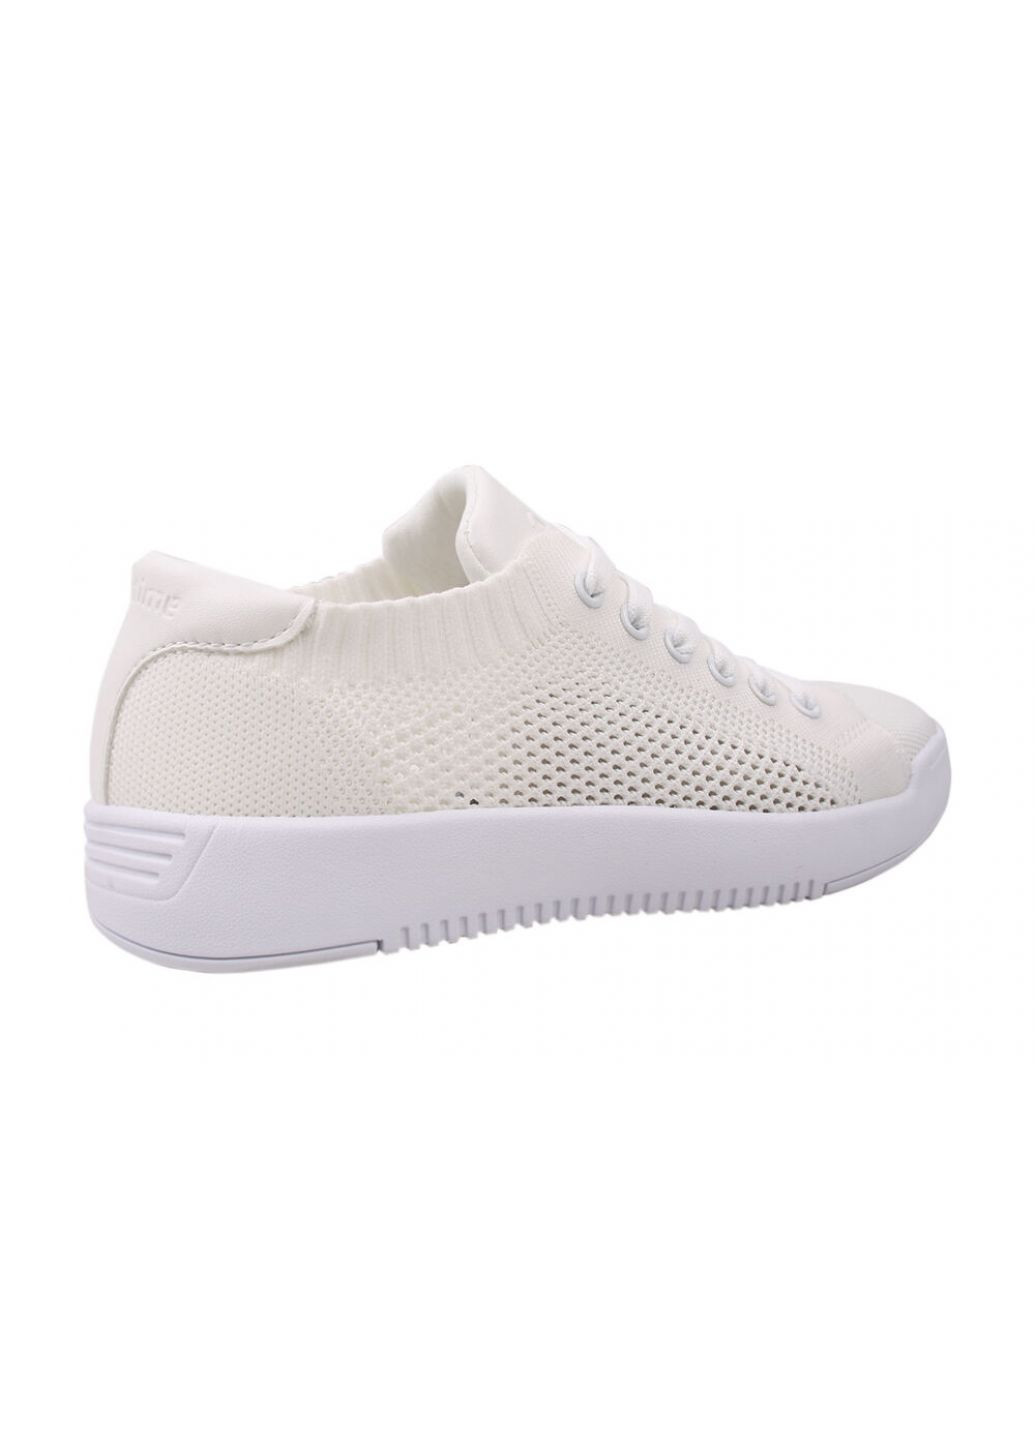 Білі кросівки жіночі res time текстиль, колір білий Restime 101-20LK